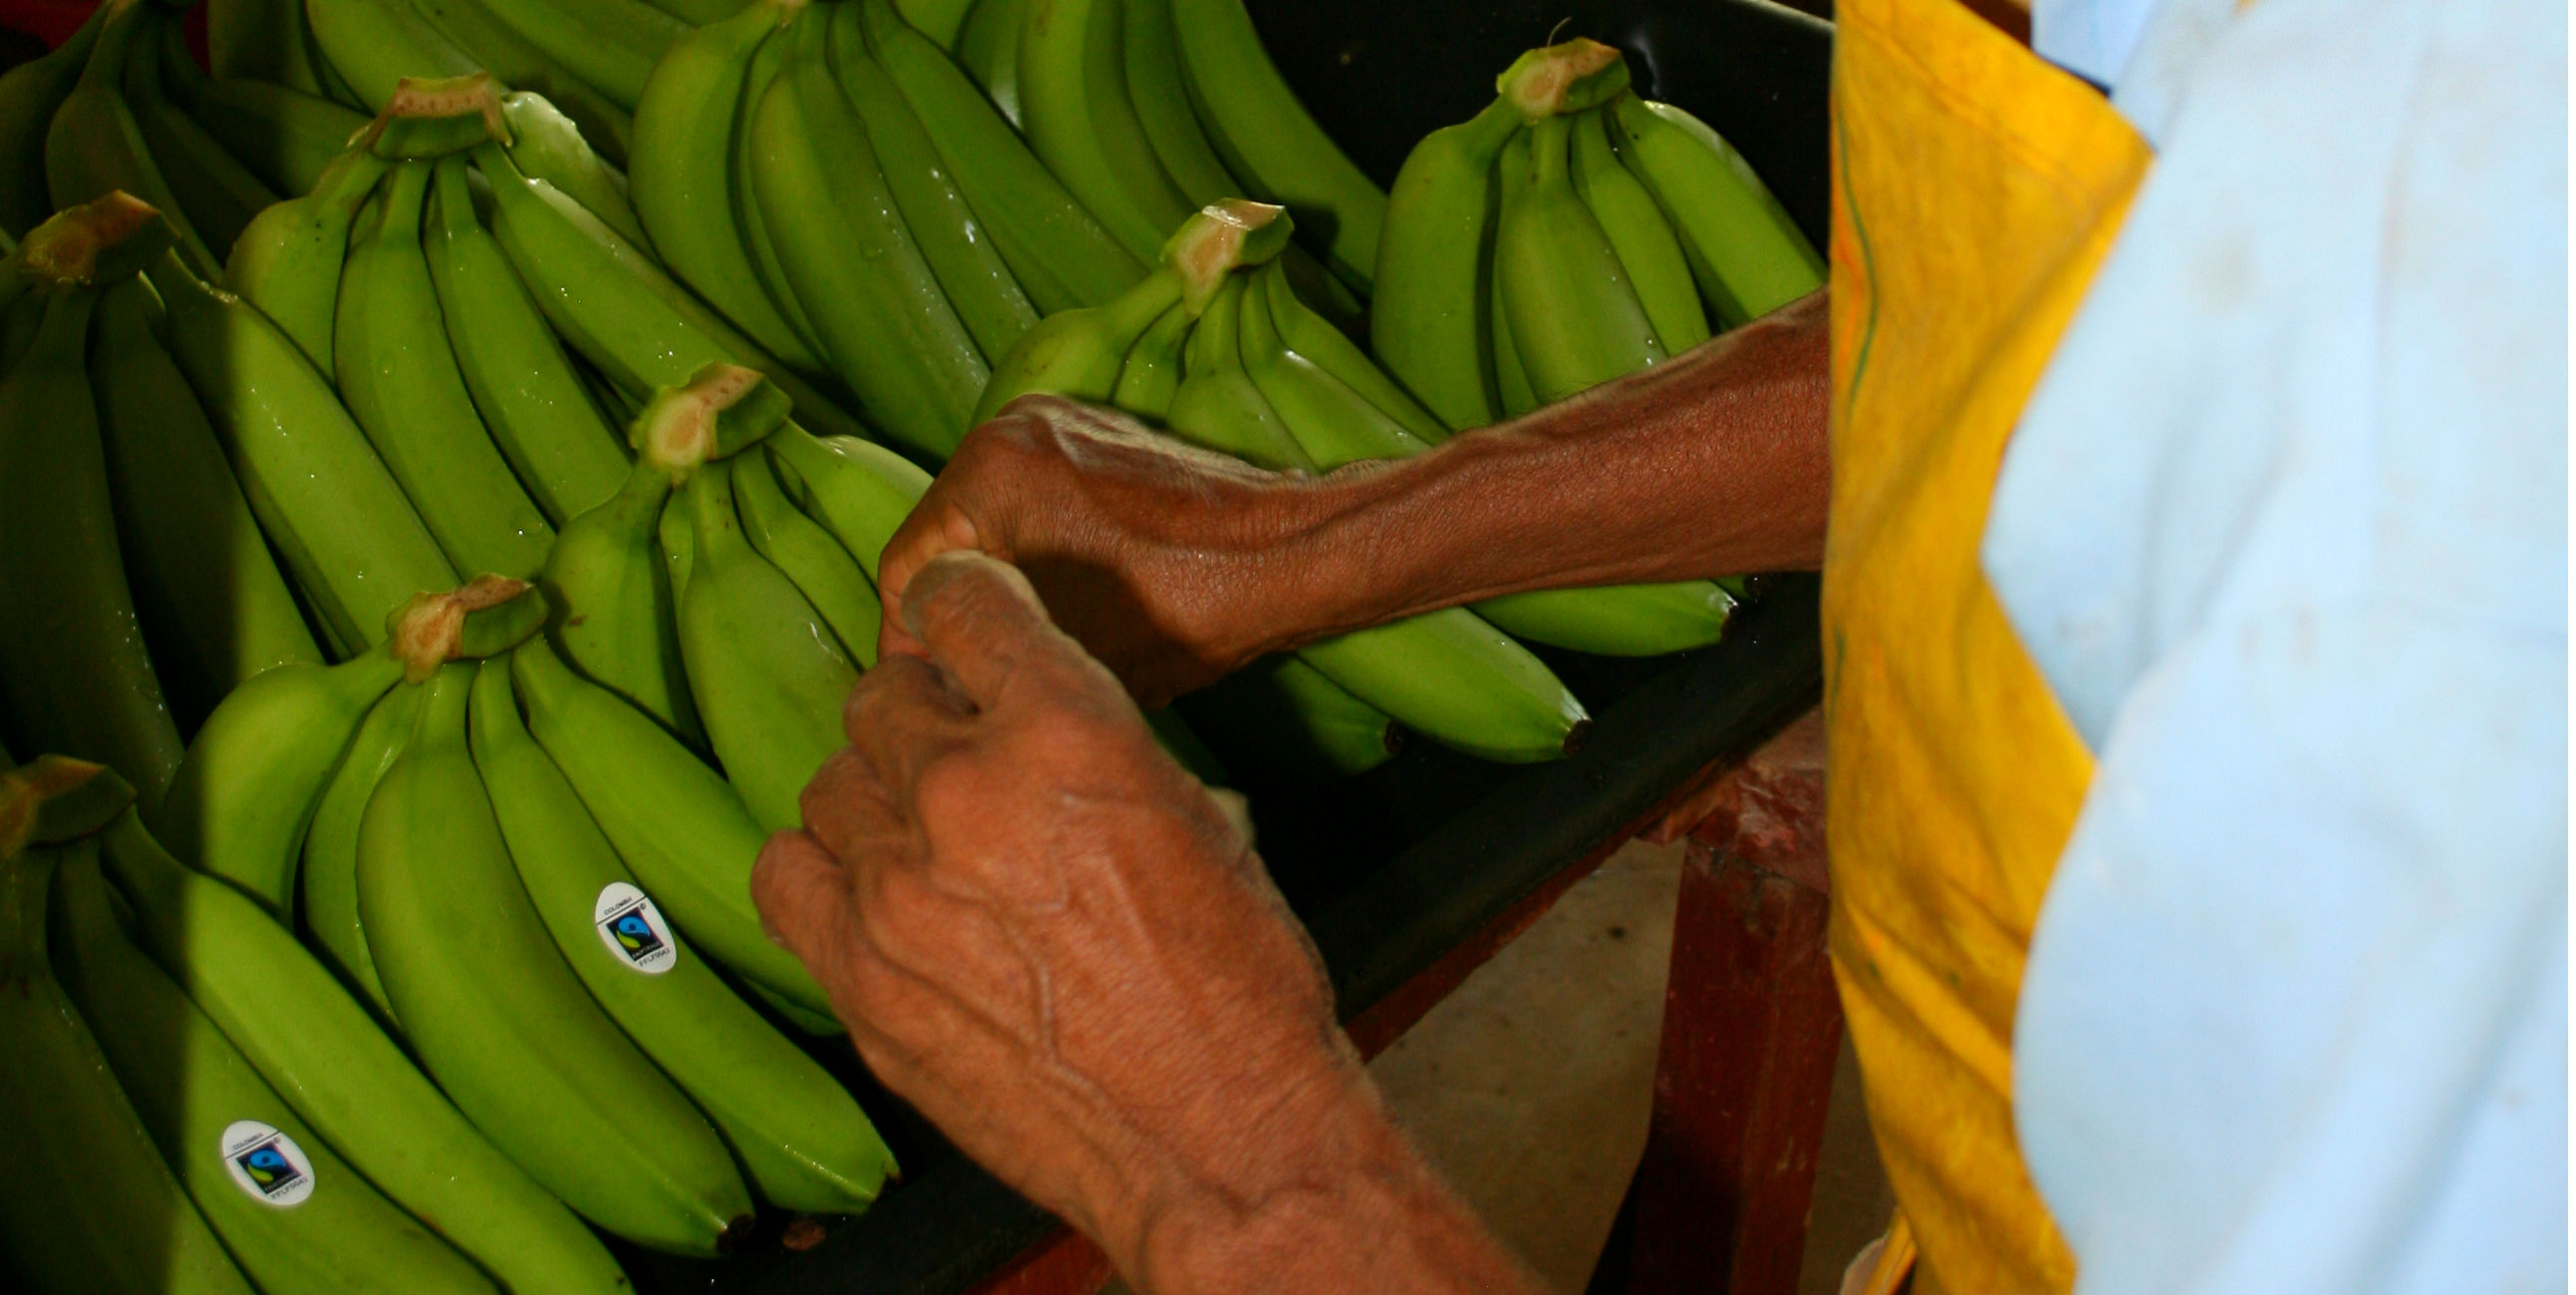 Fairtrade bananen